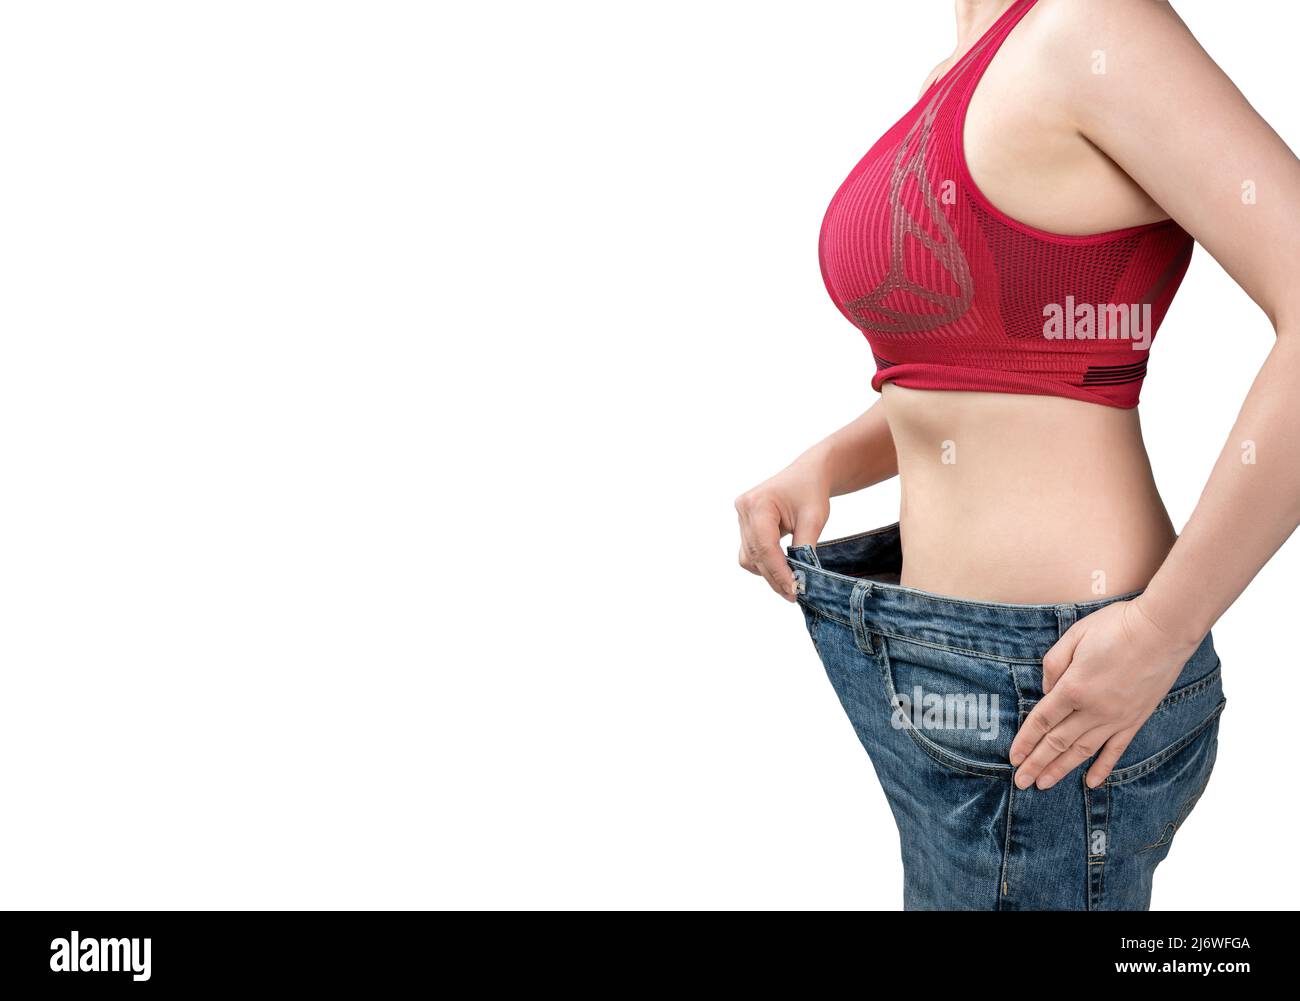 mujer con jeans demasiado grandes. Mujer con jeans sueltos. La mujer está midiendo la cintura después de la pérdida de peso. Aprobación de la dieta con vaqueros viejos demasiado grandes. D Foto de stock